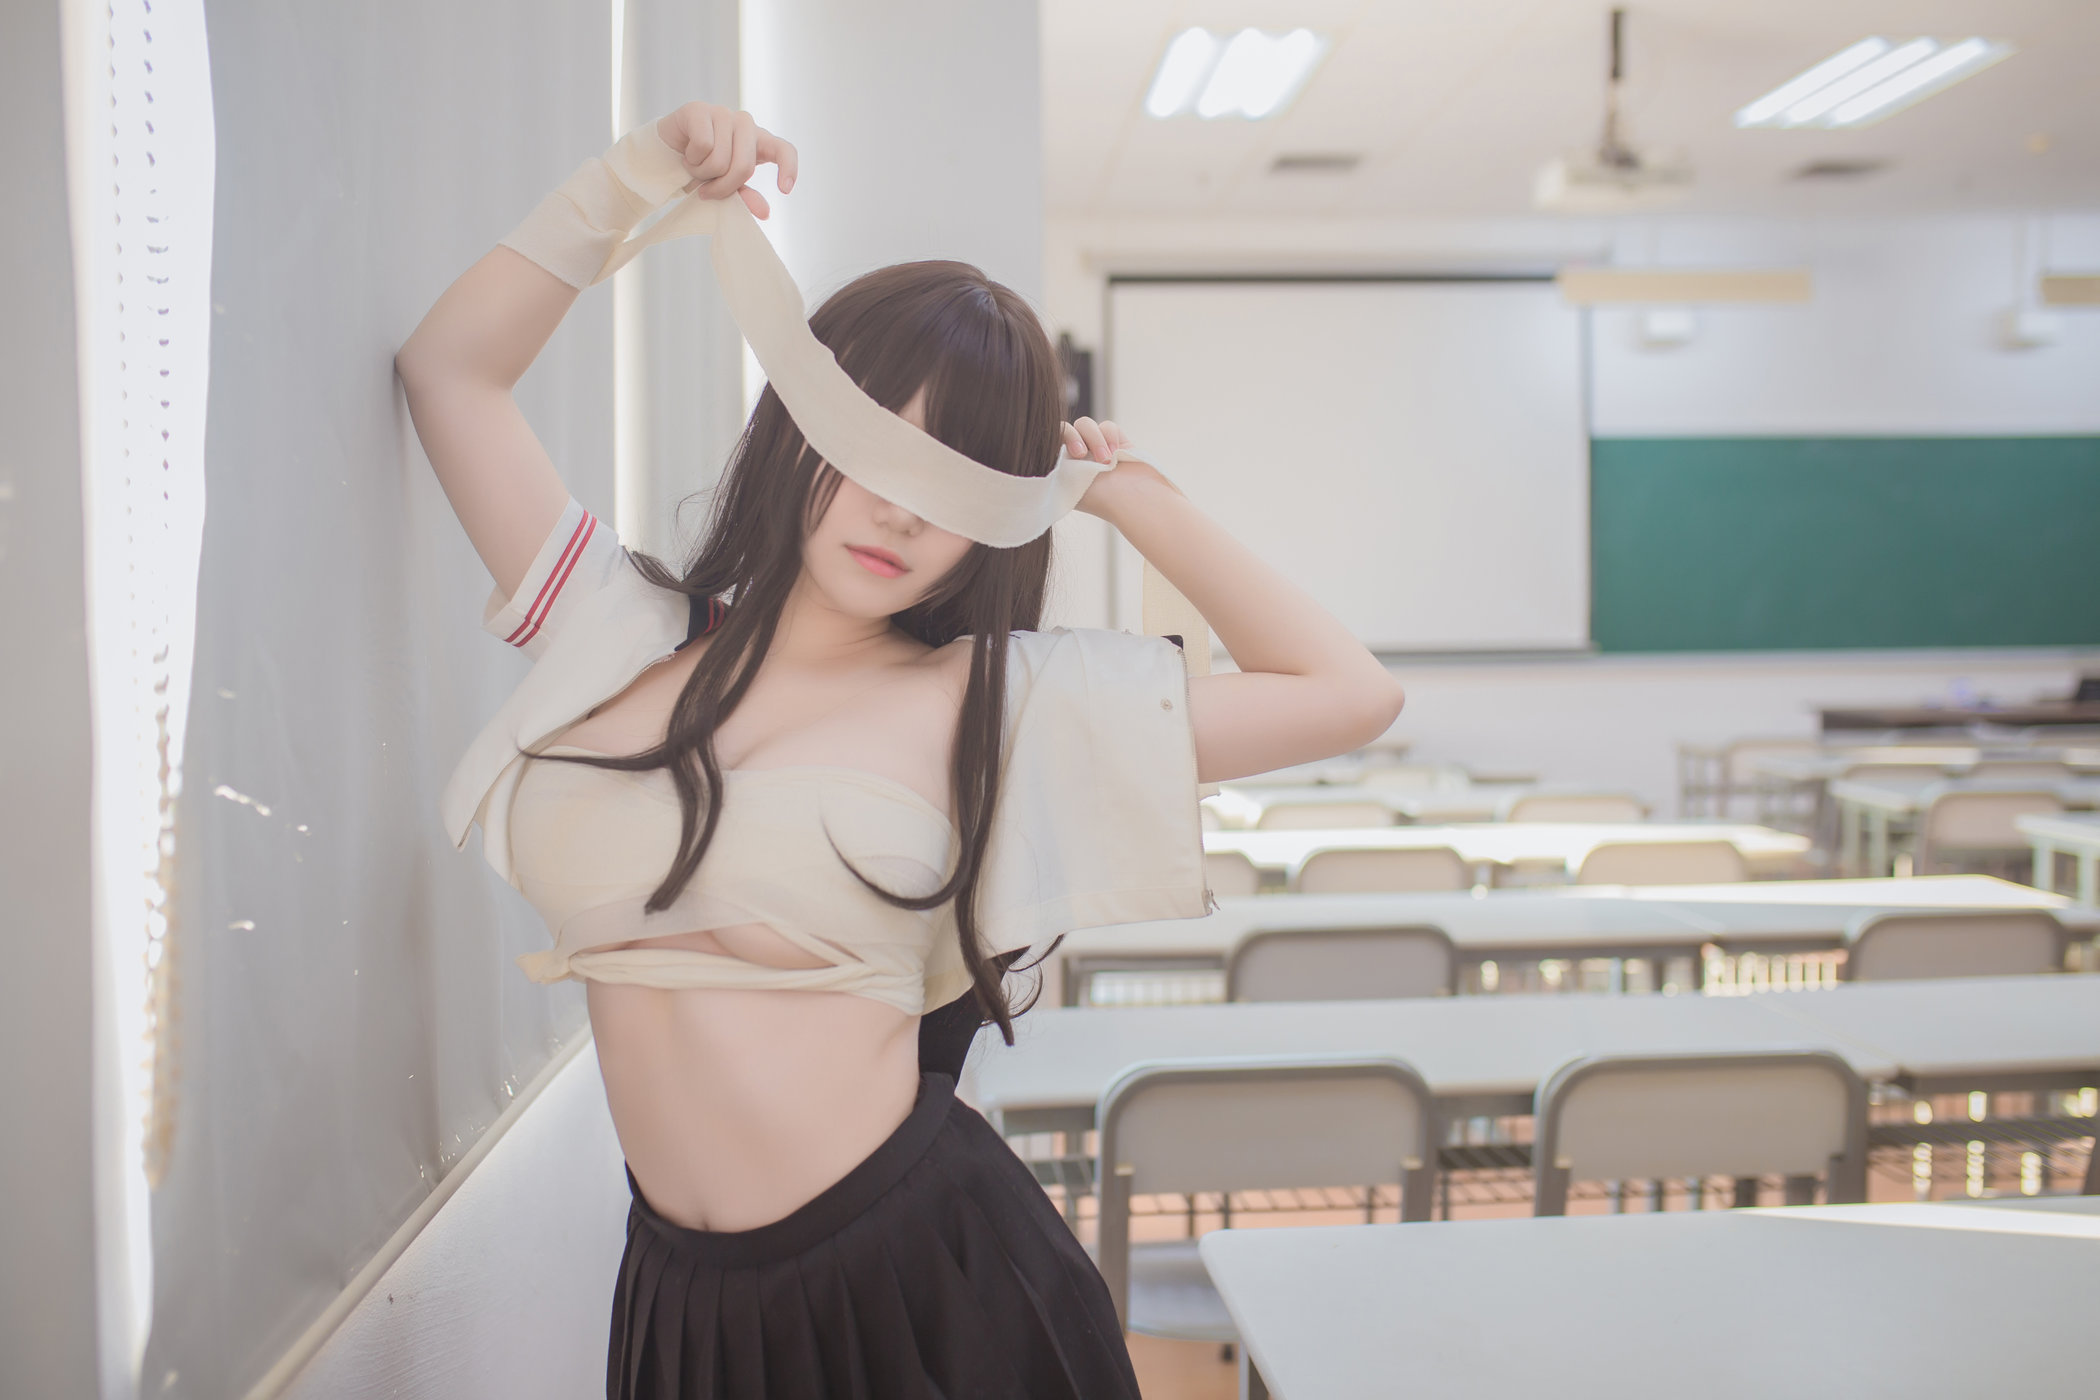 黑丝JK系列清纯学妹Yoko宅夏童颜巨乳教室脱衣